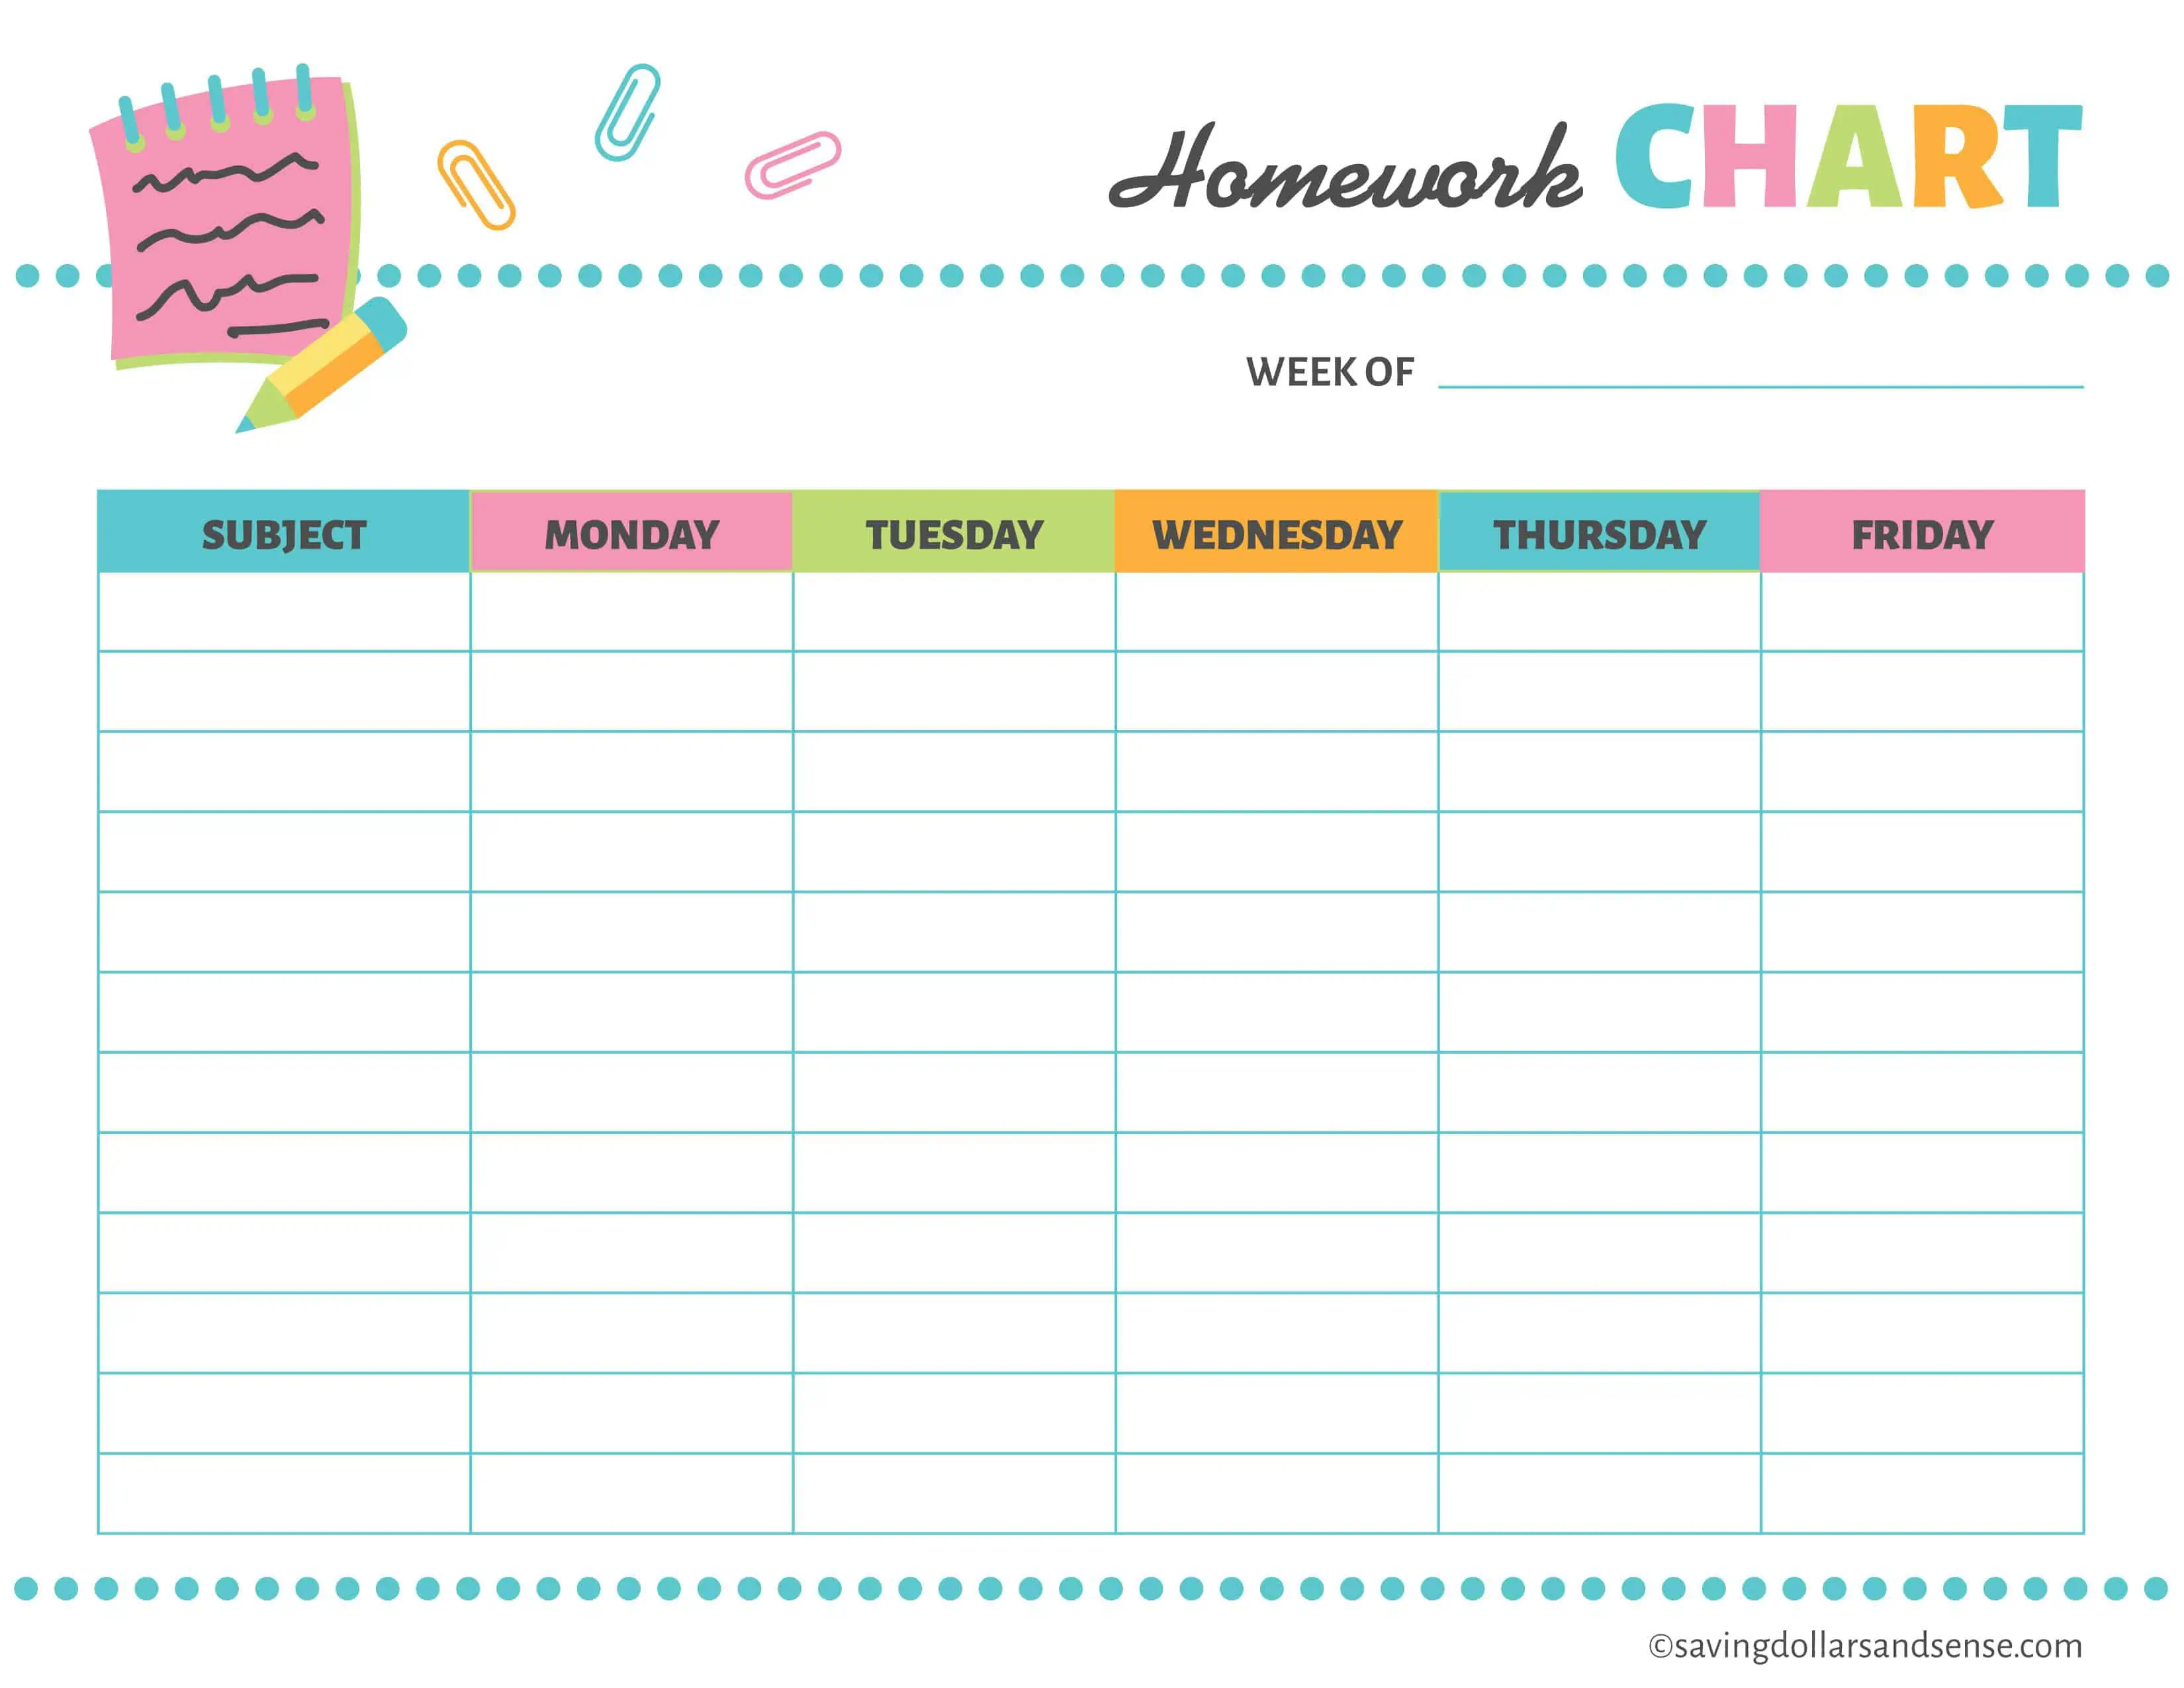 weekly homework planner printable